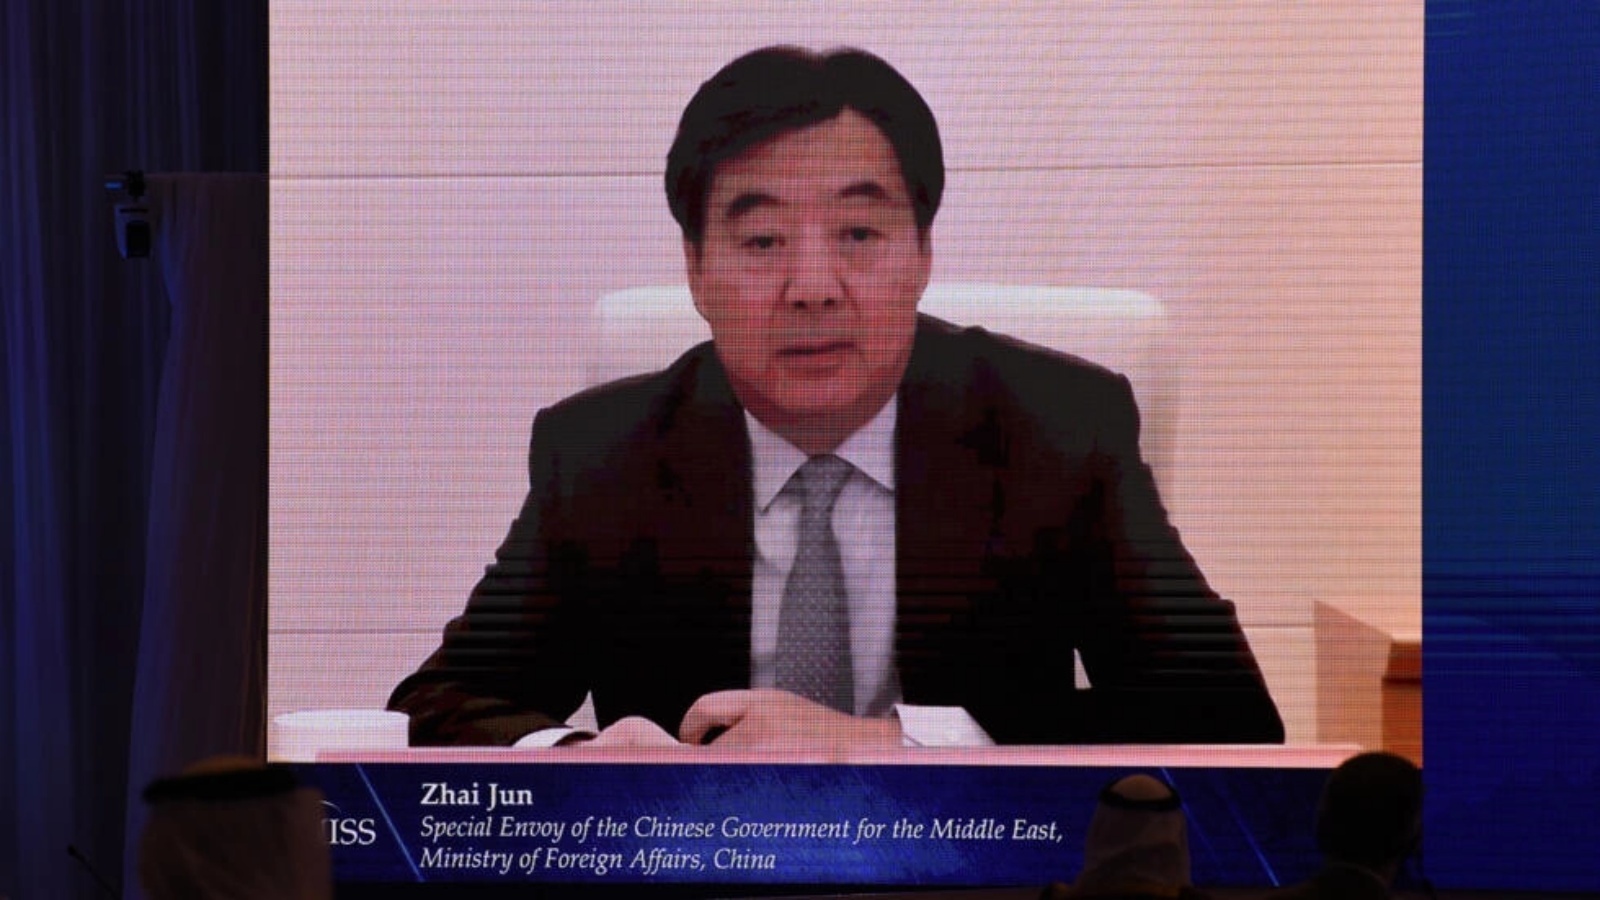 جون تشاي، المبعوث الخاص لوزارة الخارجية الصينية يصل إلى الشرق الأوسط، إلى المنطقة هذا الأسبوع، على الرغم من عدم وجود تفاصيل حول خط سير رحلته